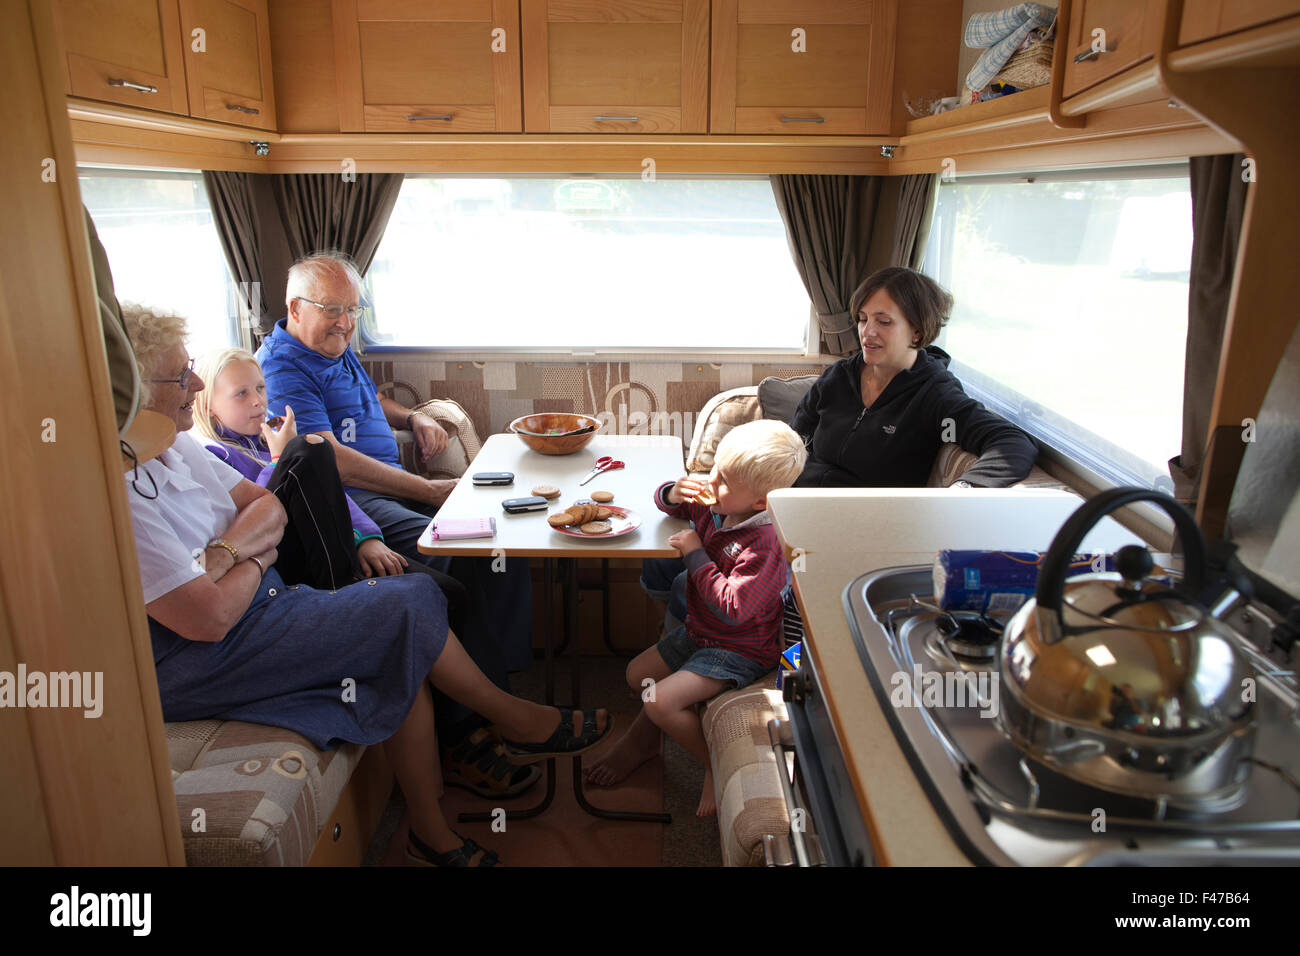 Englischen Familie, genießen Sie ihre Freizeit während des Urlaubs zusammen in einem Wohnwagen, England, UK Stockfoto